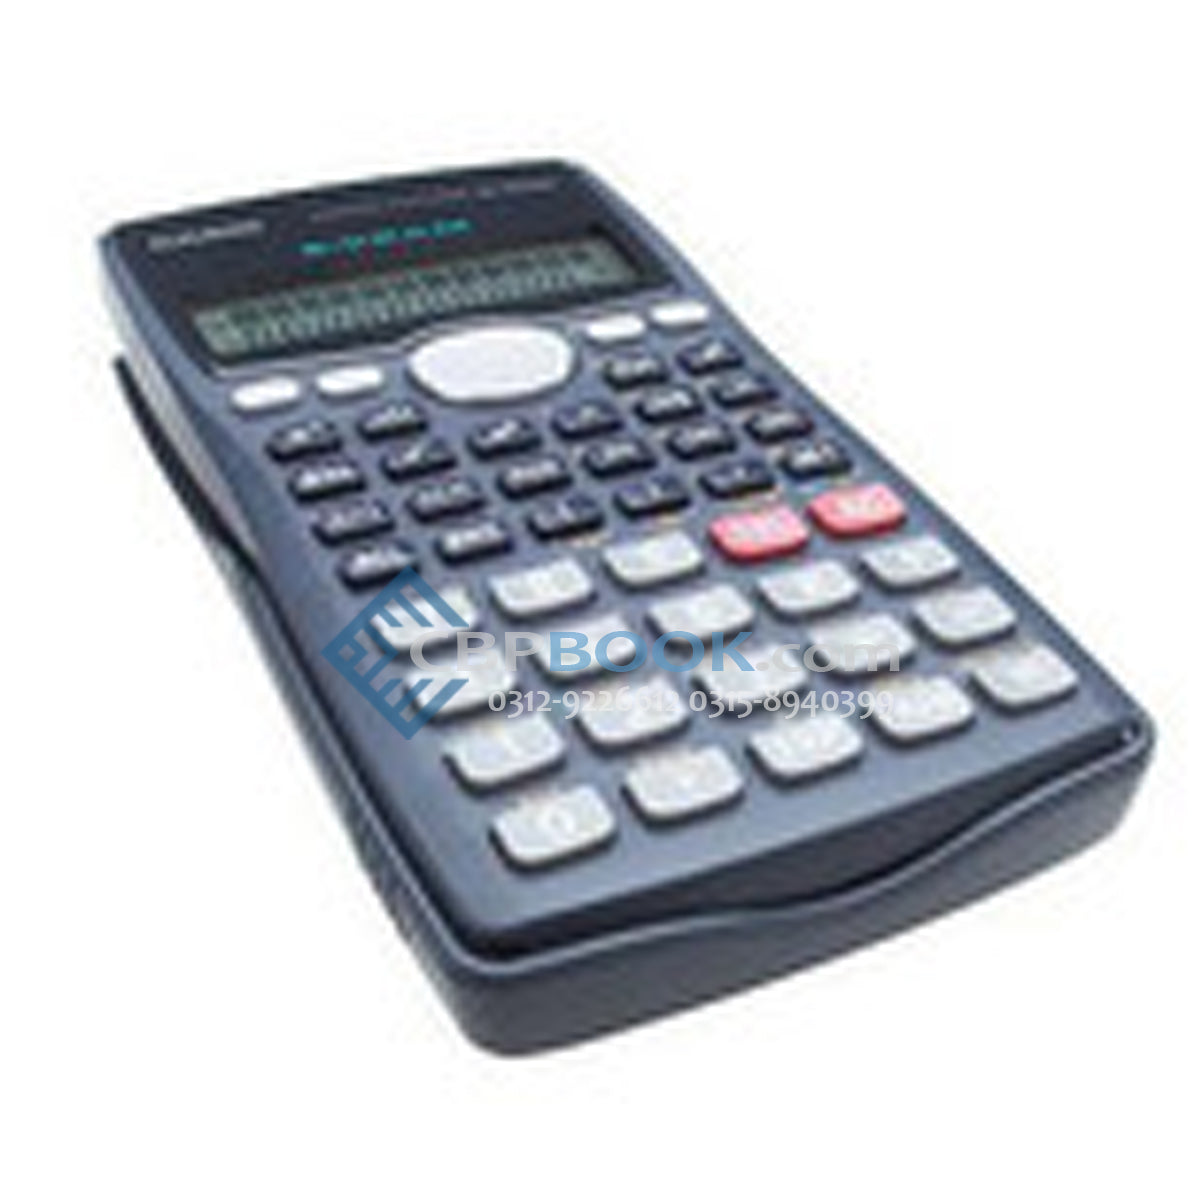 Casio Scientific Calculator FX-100MS Original